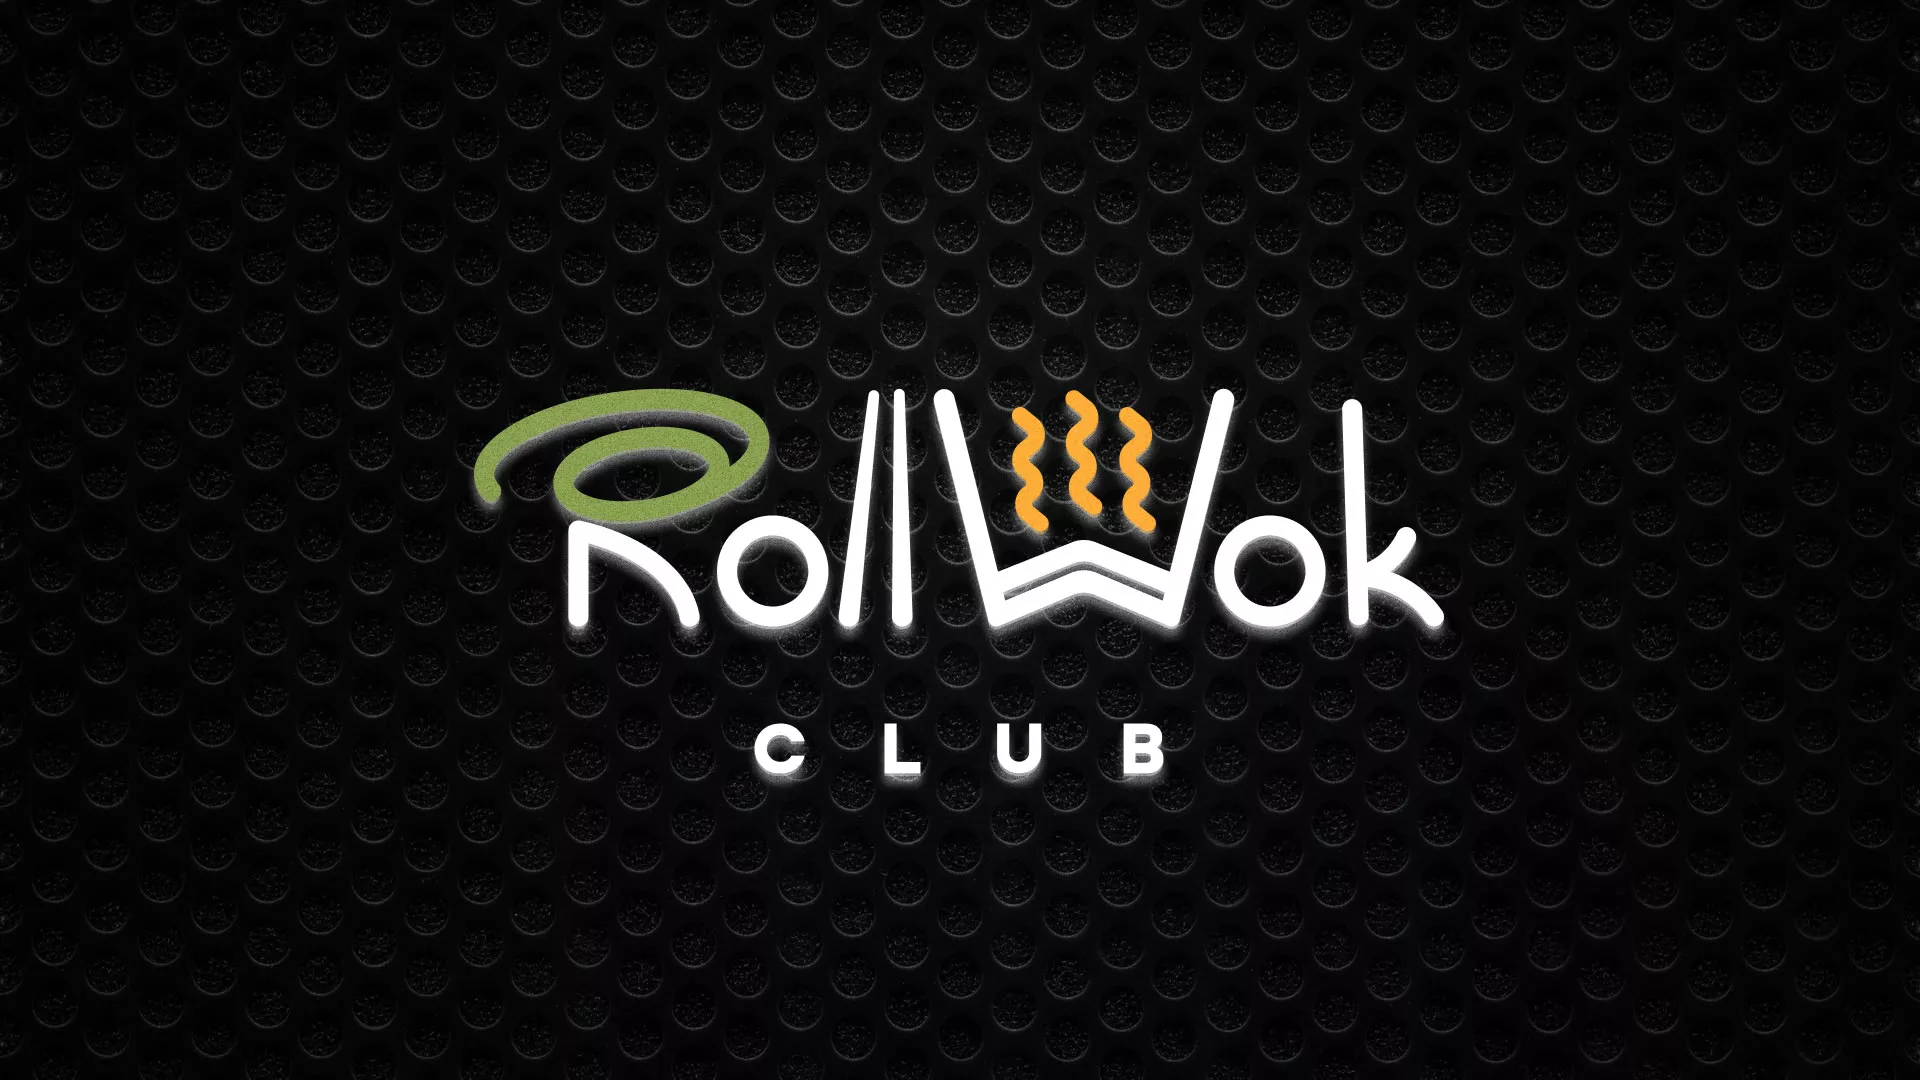 Брендирование торговых точек суши-бара «Roll Wok Club» в Гае